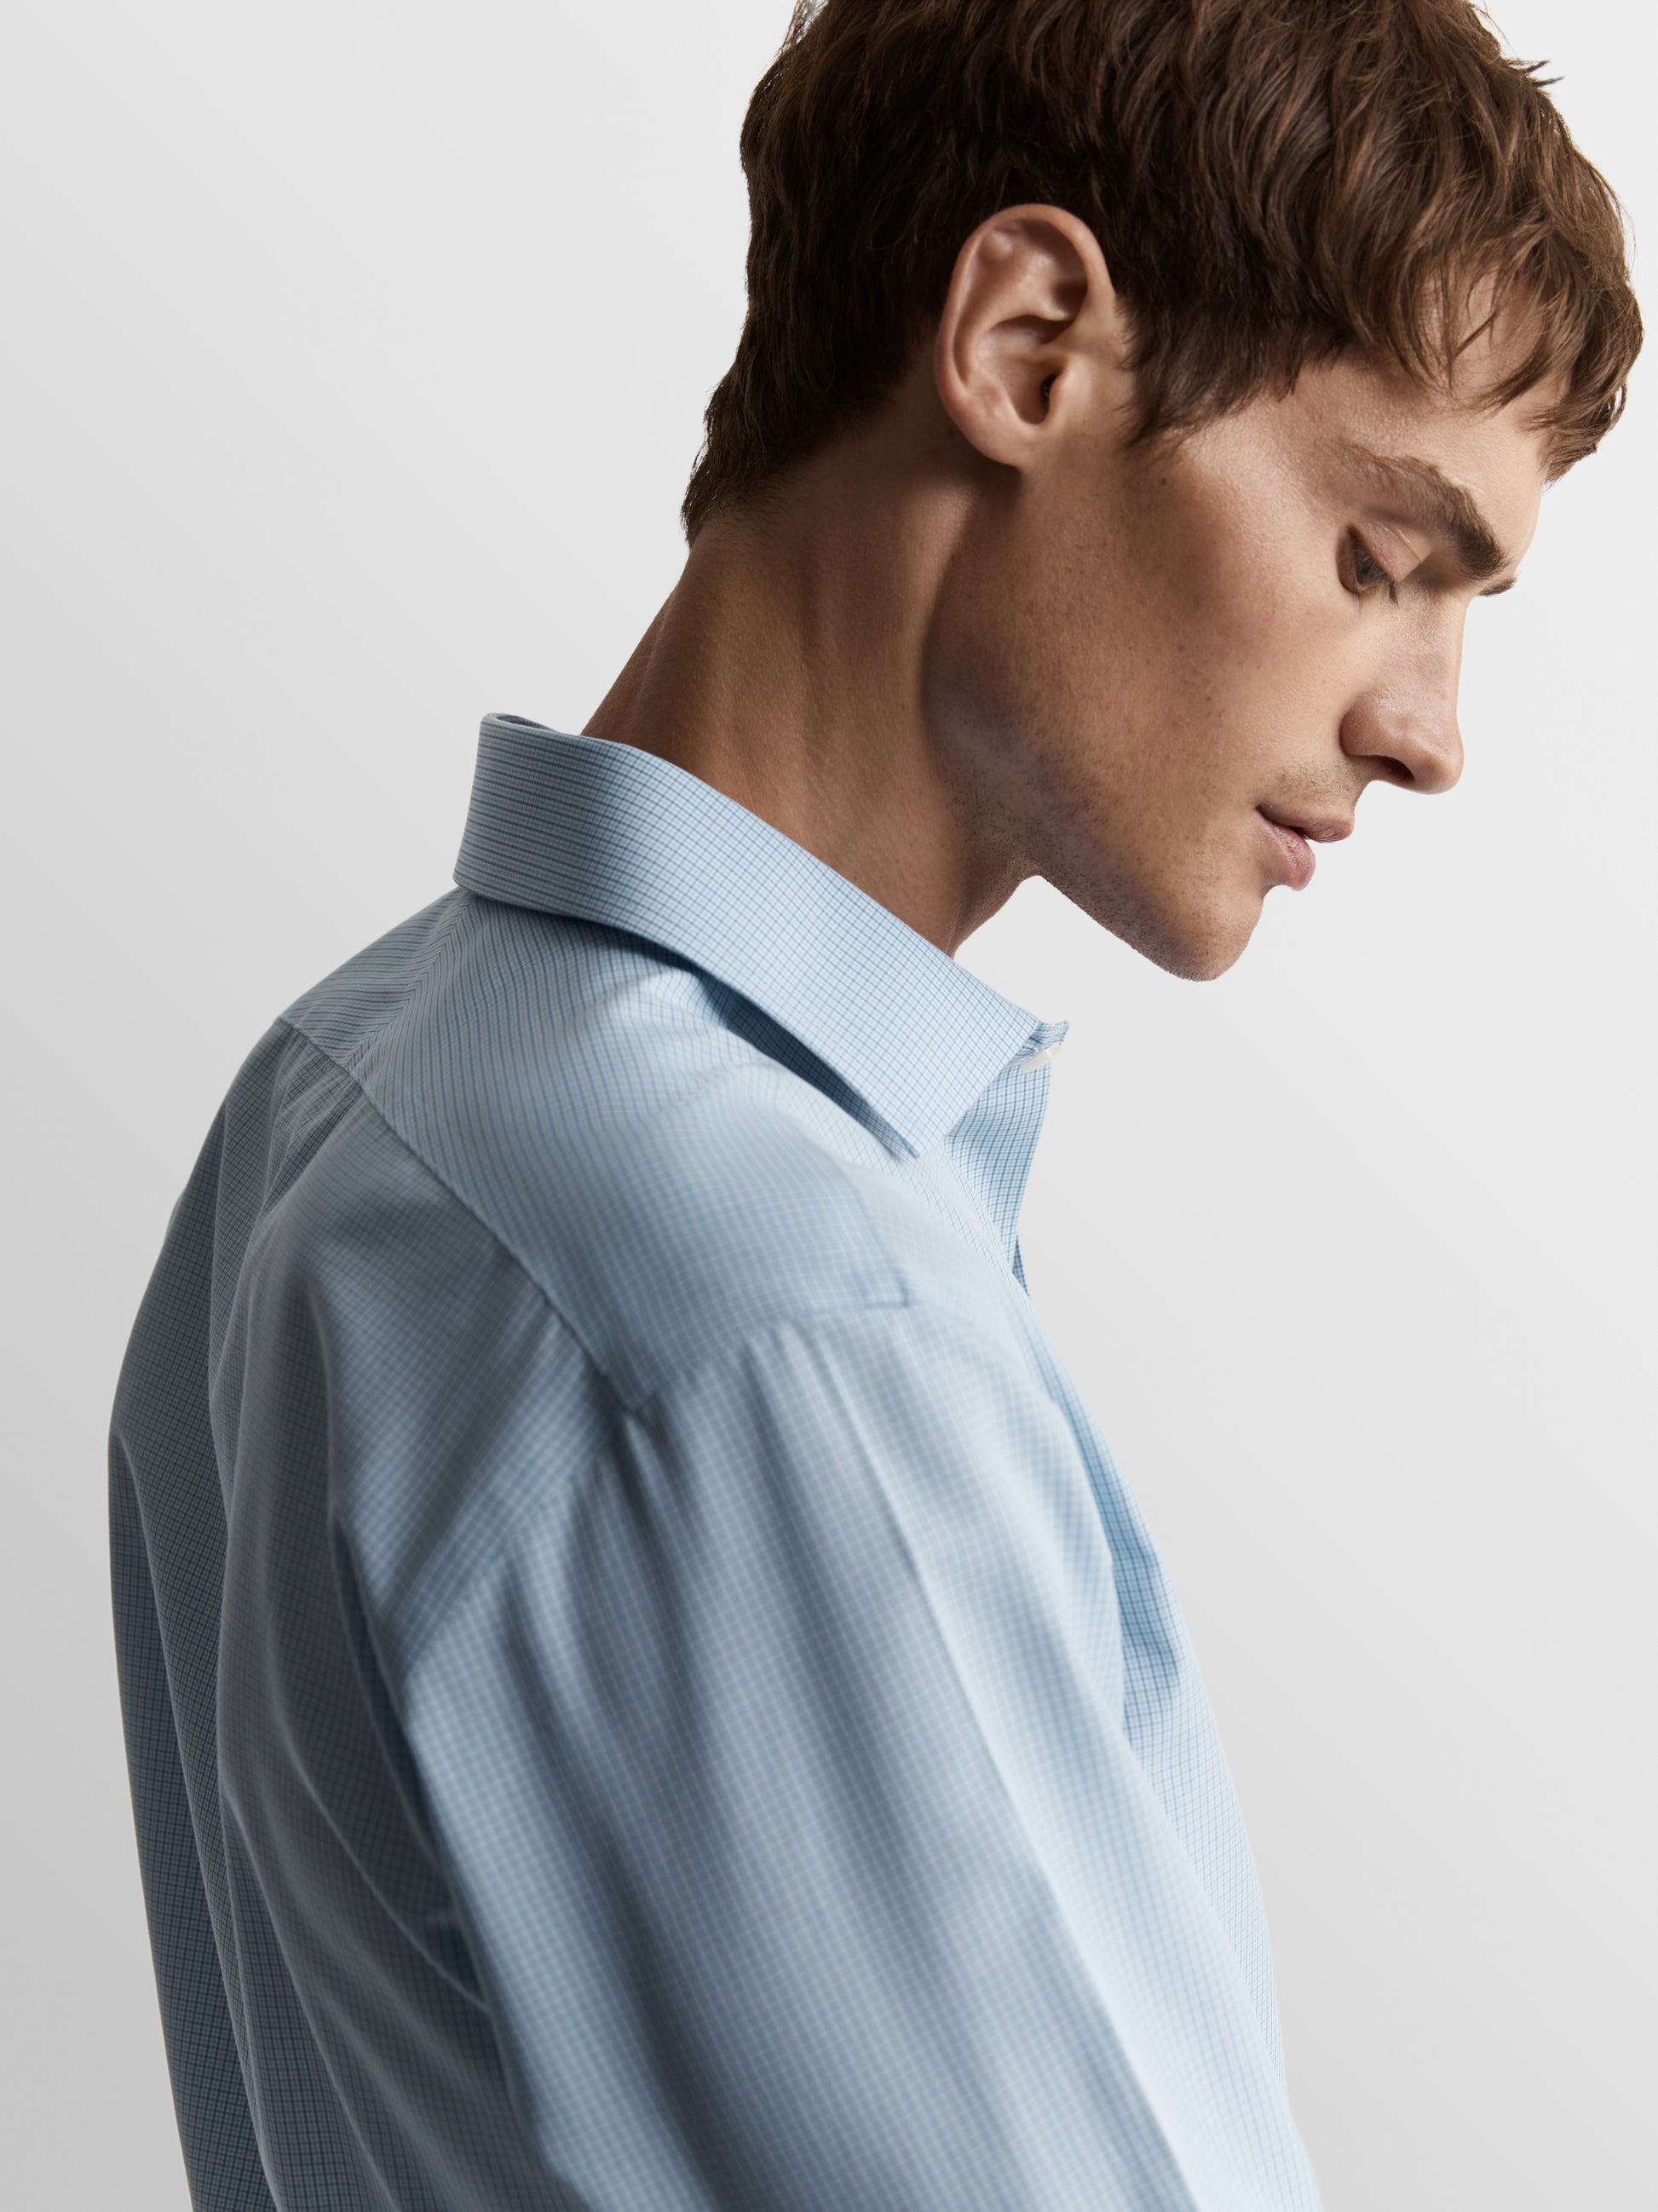 Image 1 of Non-Iron Blue Multi Micro Check Poplin Fitted Single Cuff Classic Collar Shirt